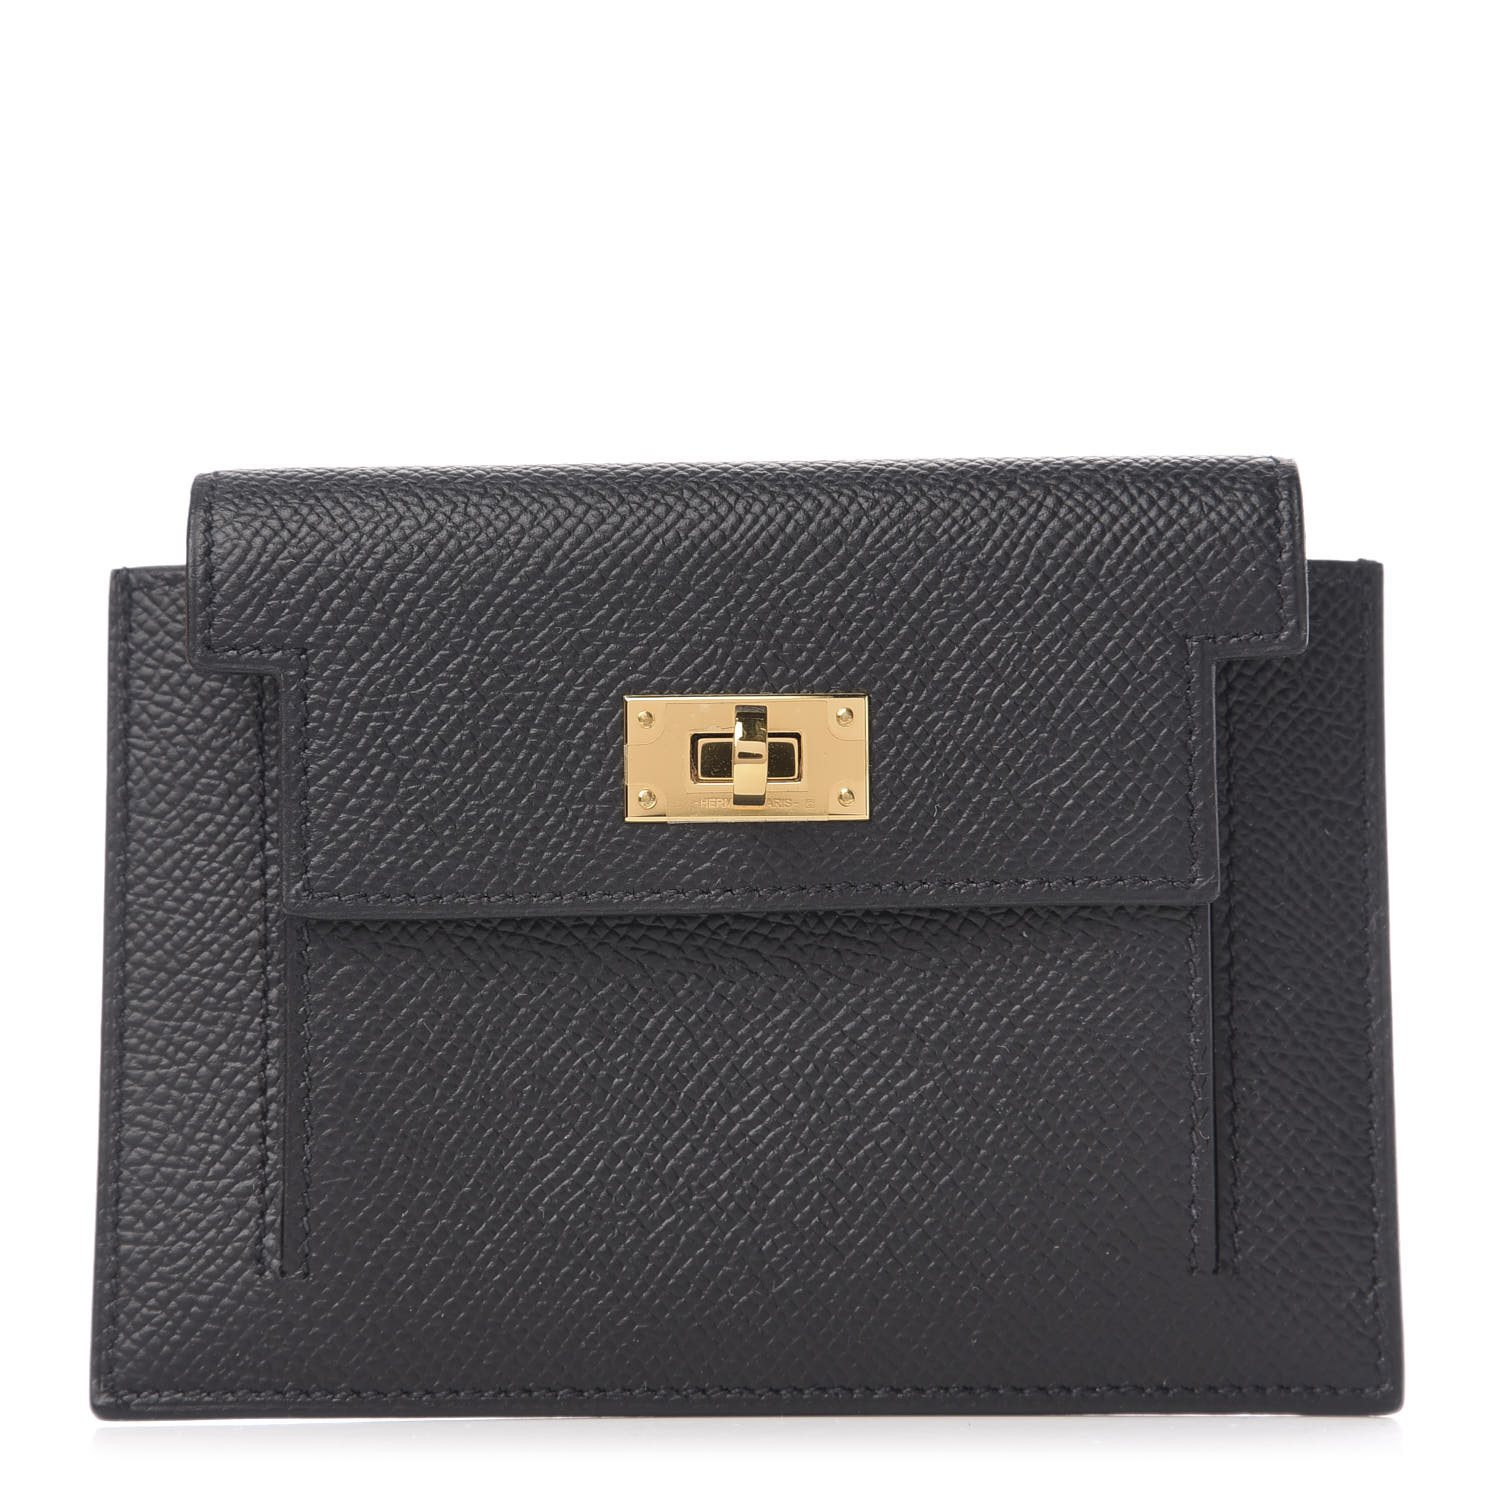 HERMES Epsom Kelly Pocket Compact Wallet Black 596854